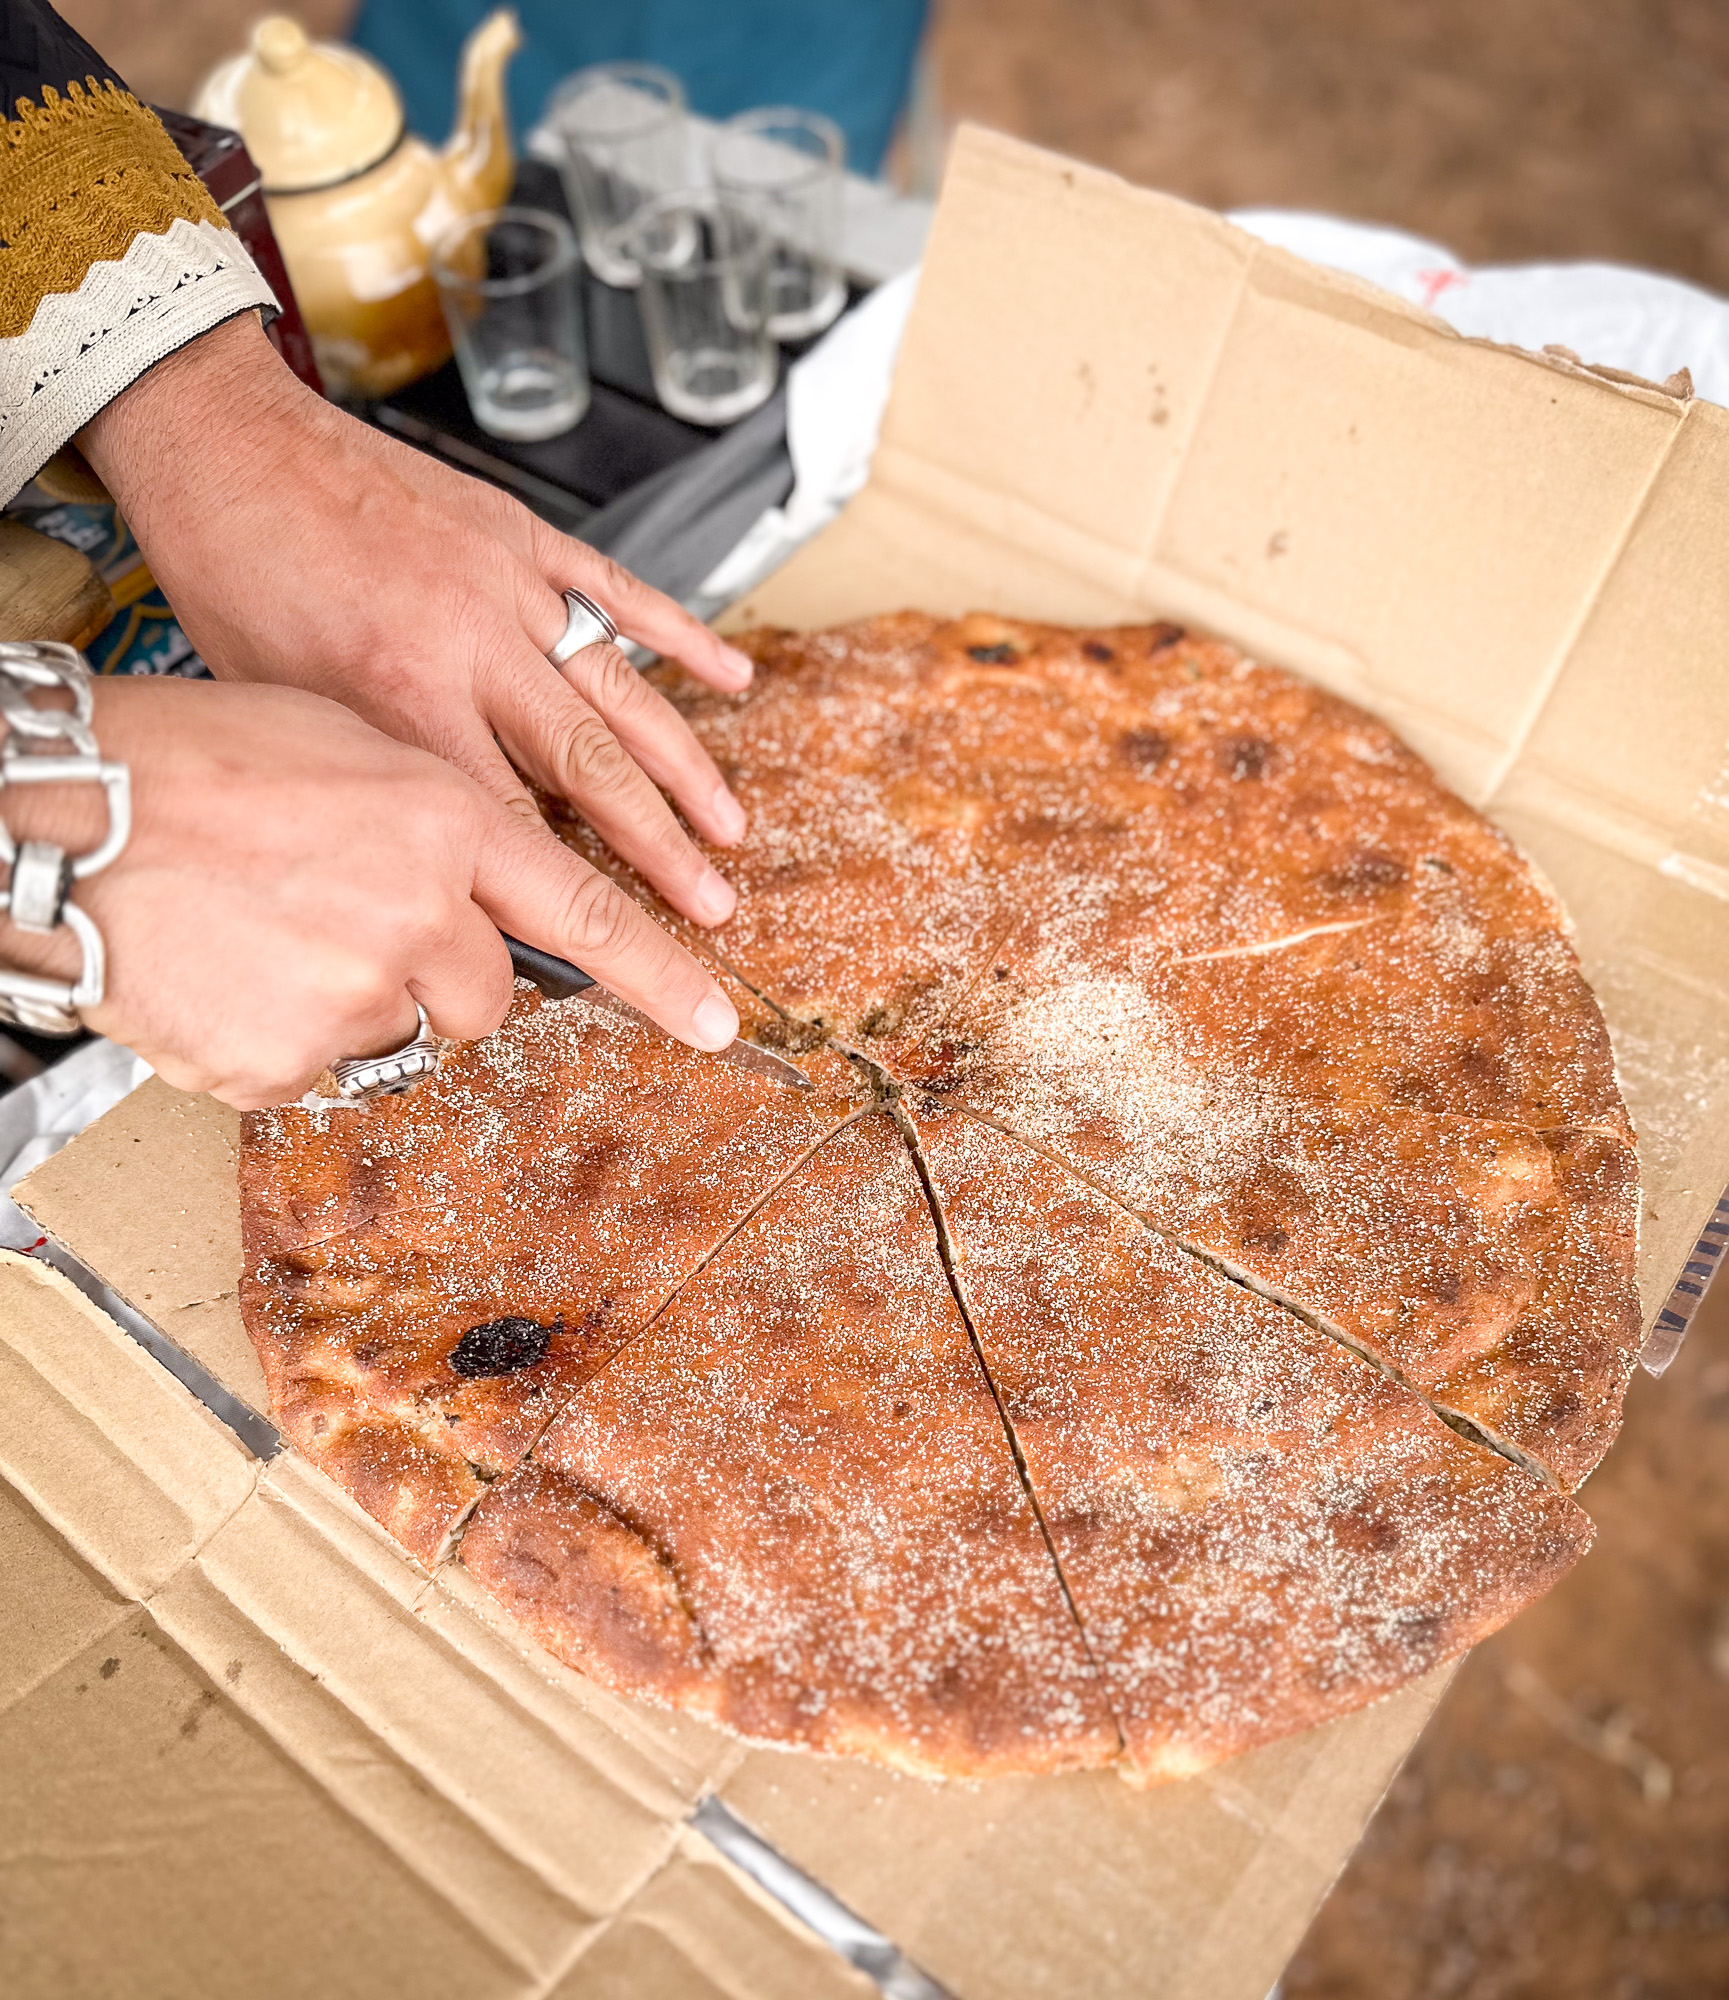 Berber pizza on a cardboard box